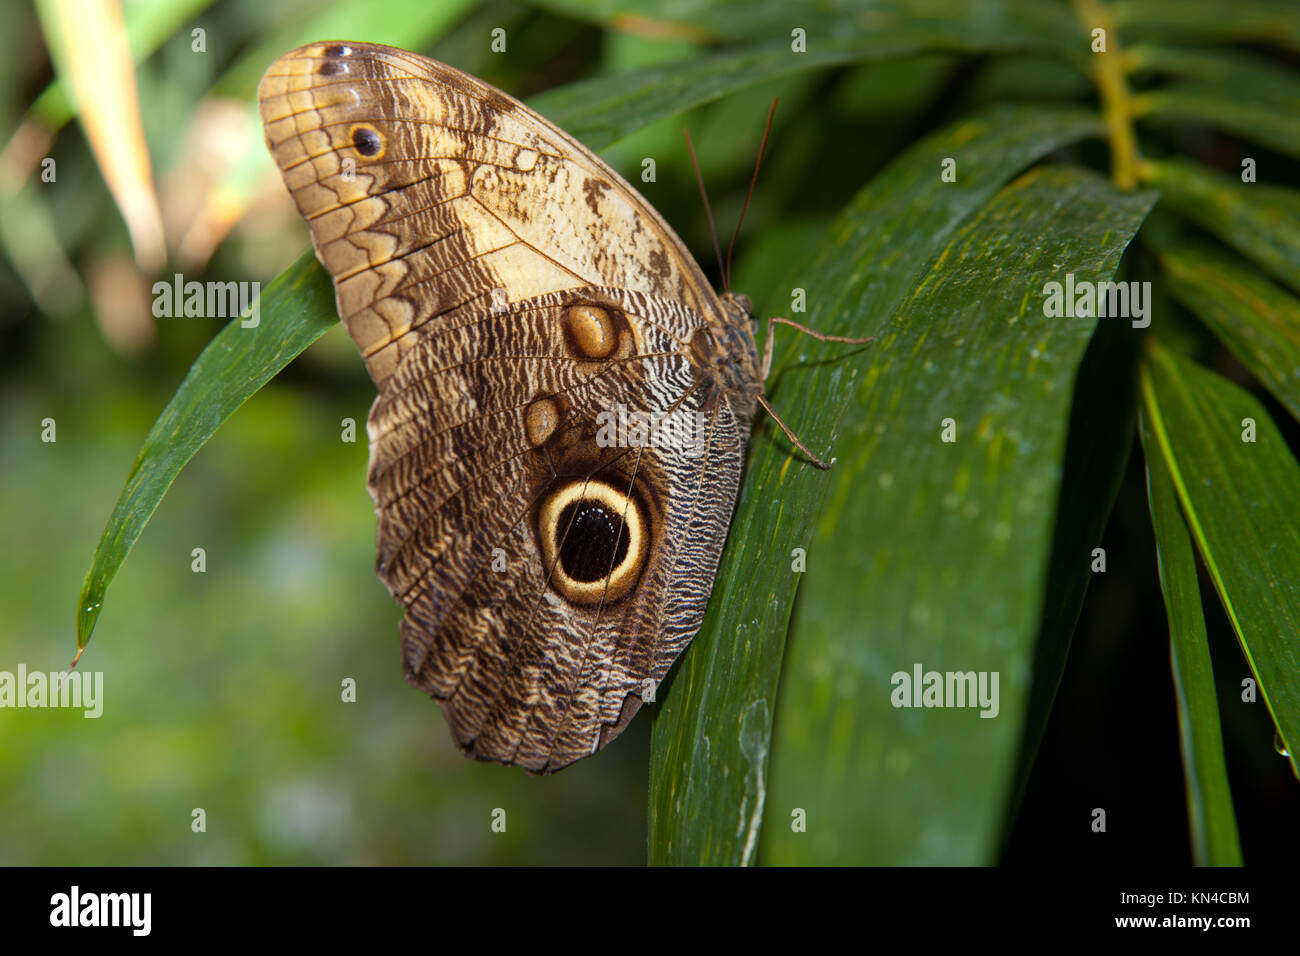 Close-up de una hermosa mariposa búho tropical, Caligo Memnon, en delicados tonos de azul y crema, con la característica mancha ocular en su parte inferior Foto de stock